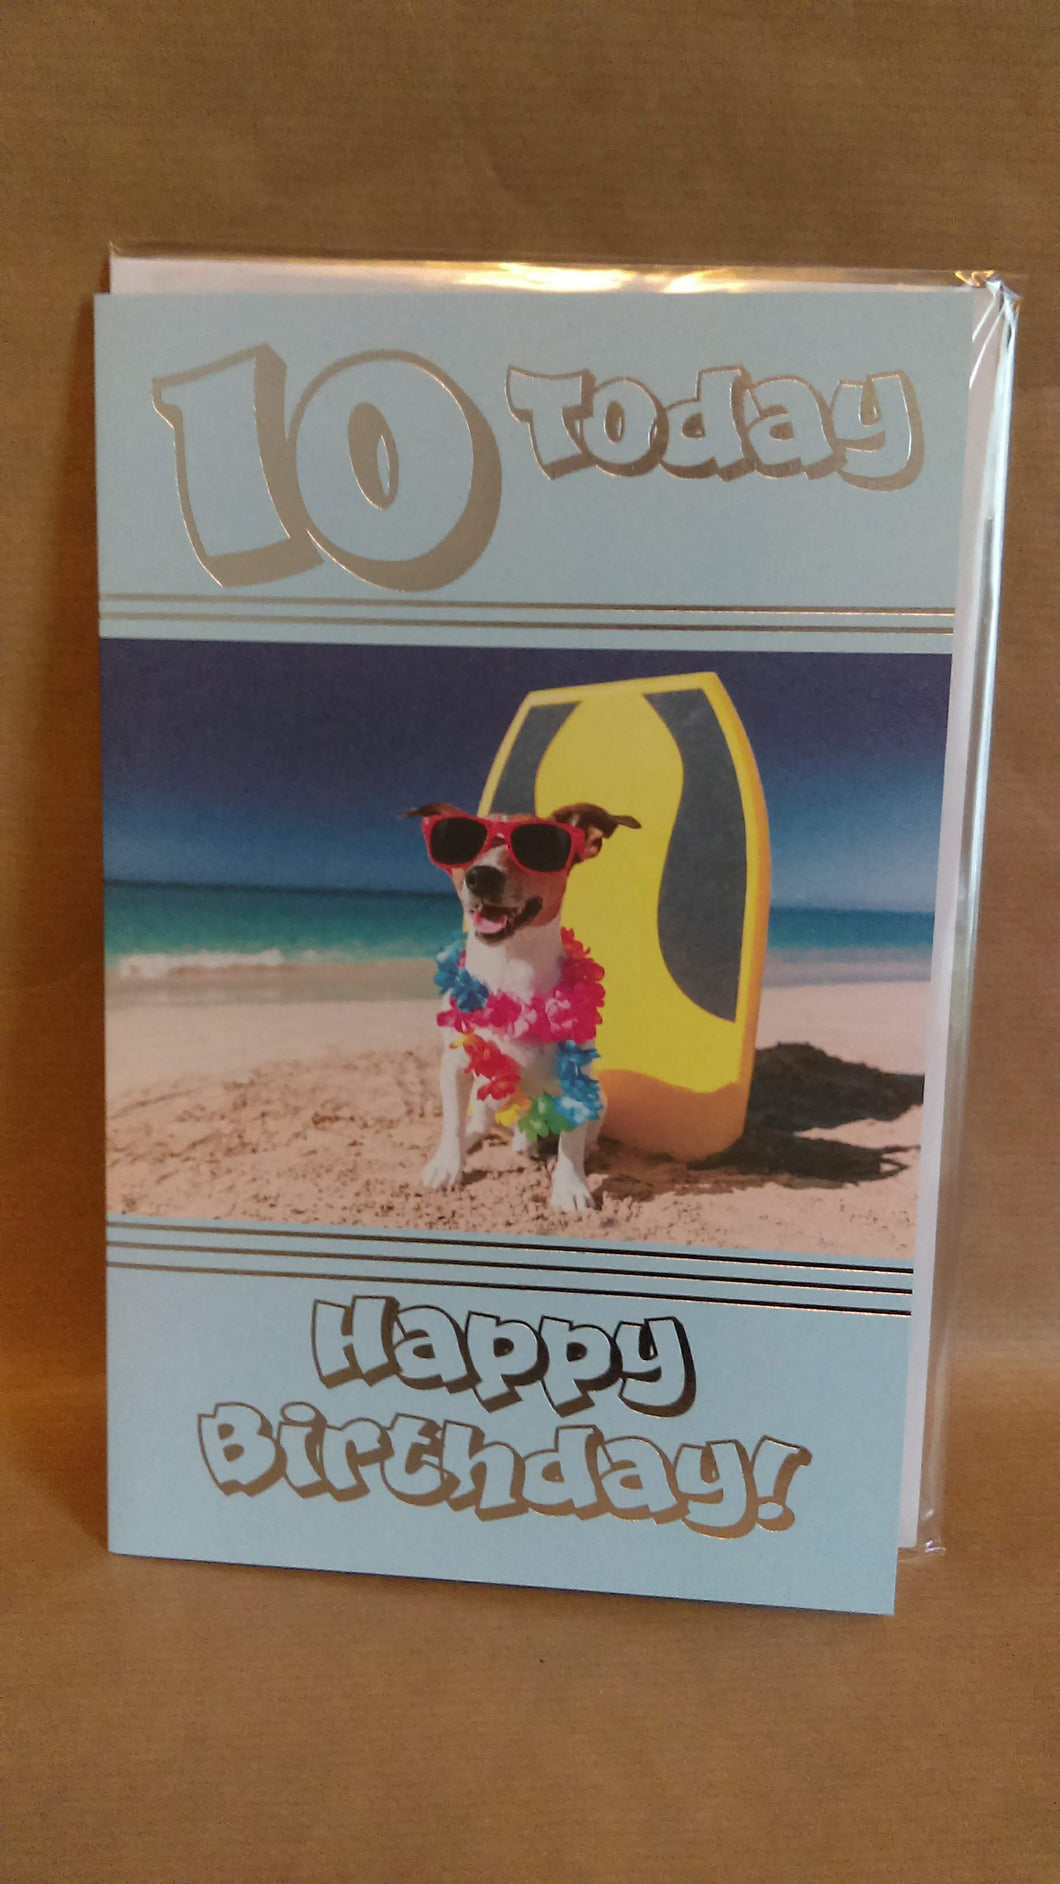 10 Today Happy Birthday